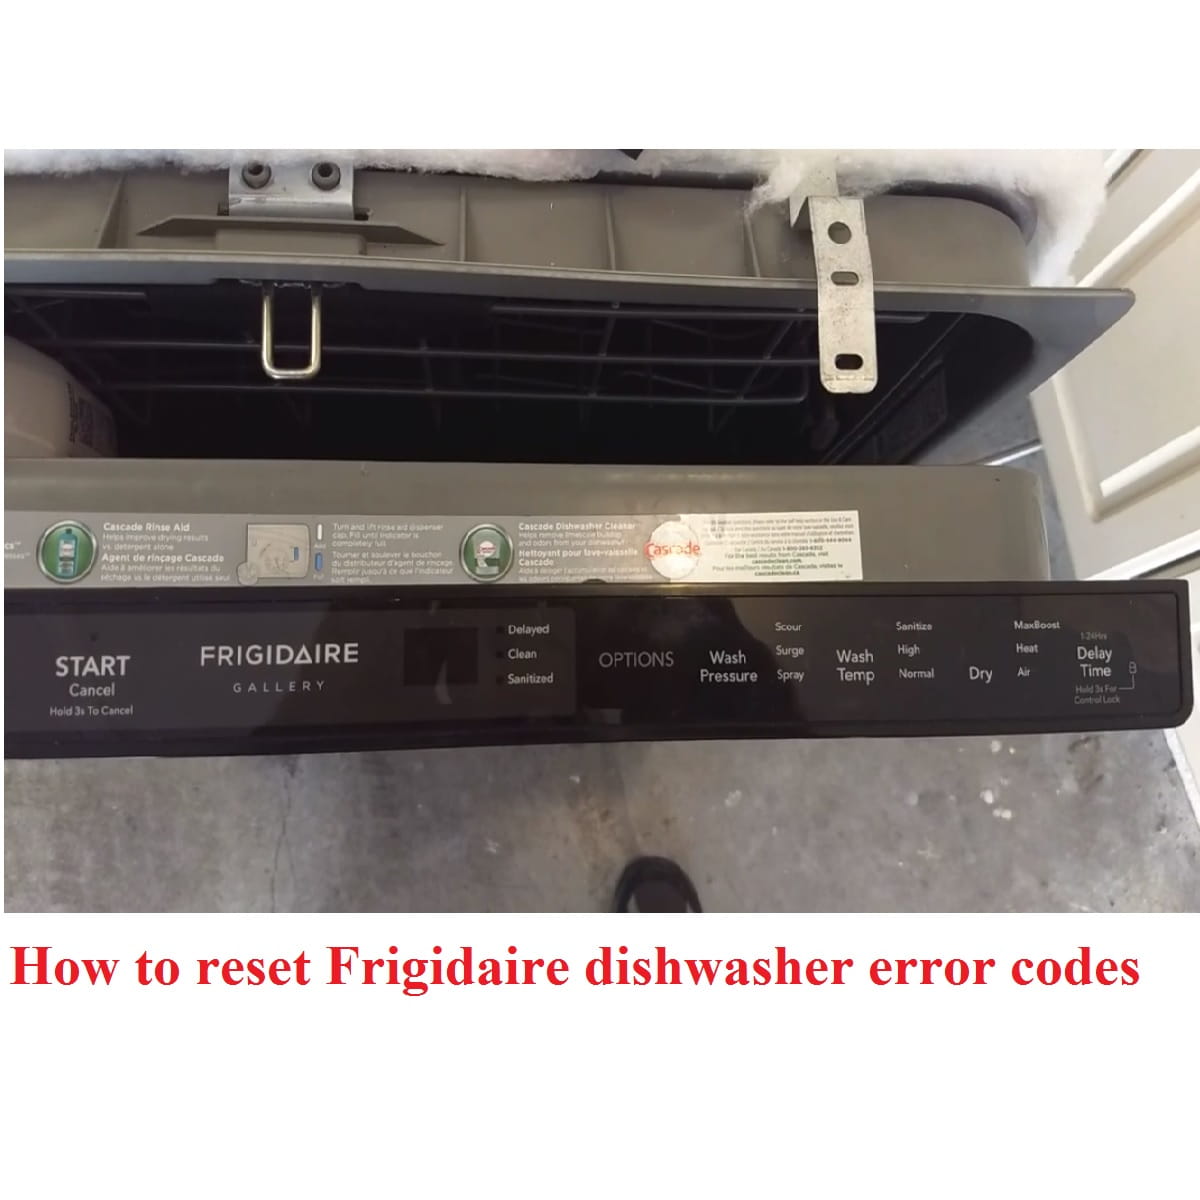 Frigidaire dishwasher error codes reset